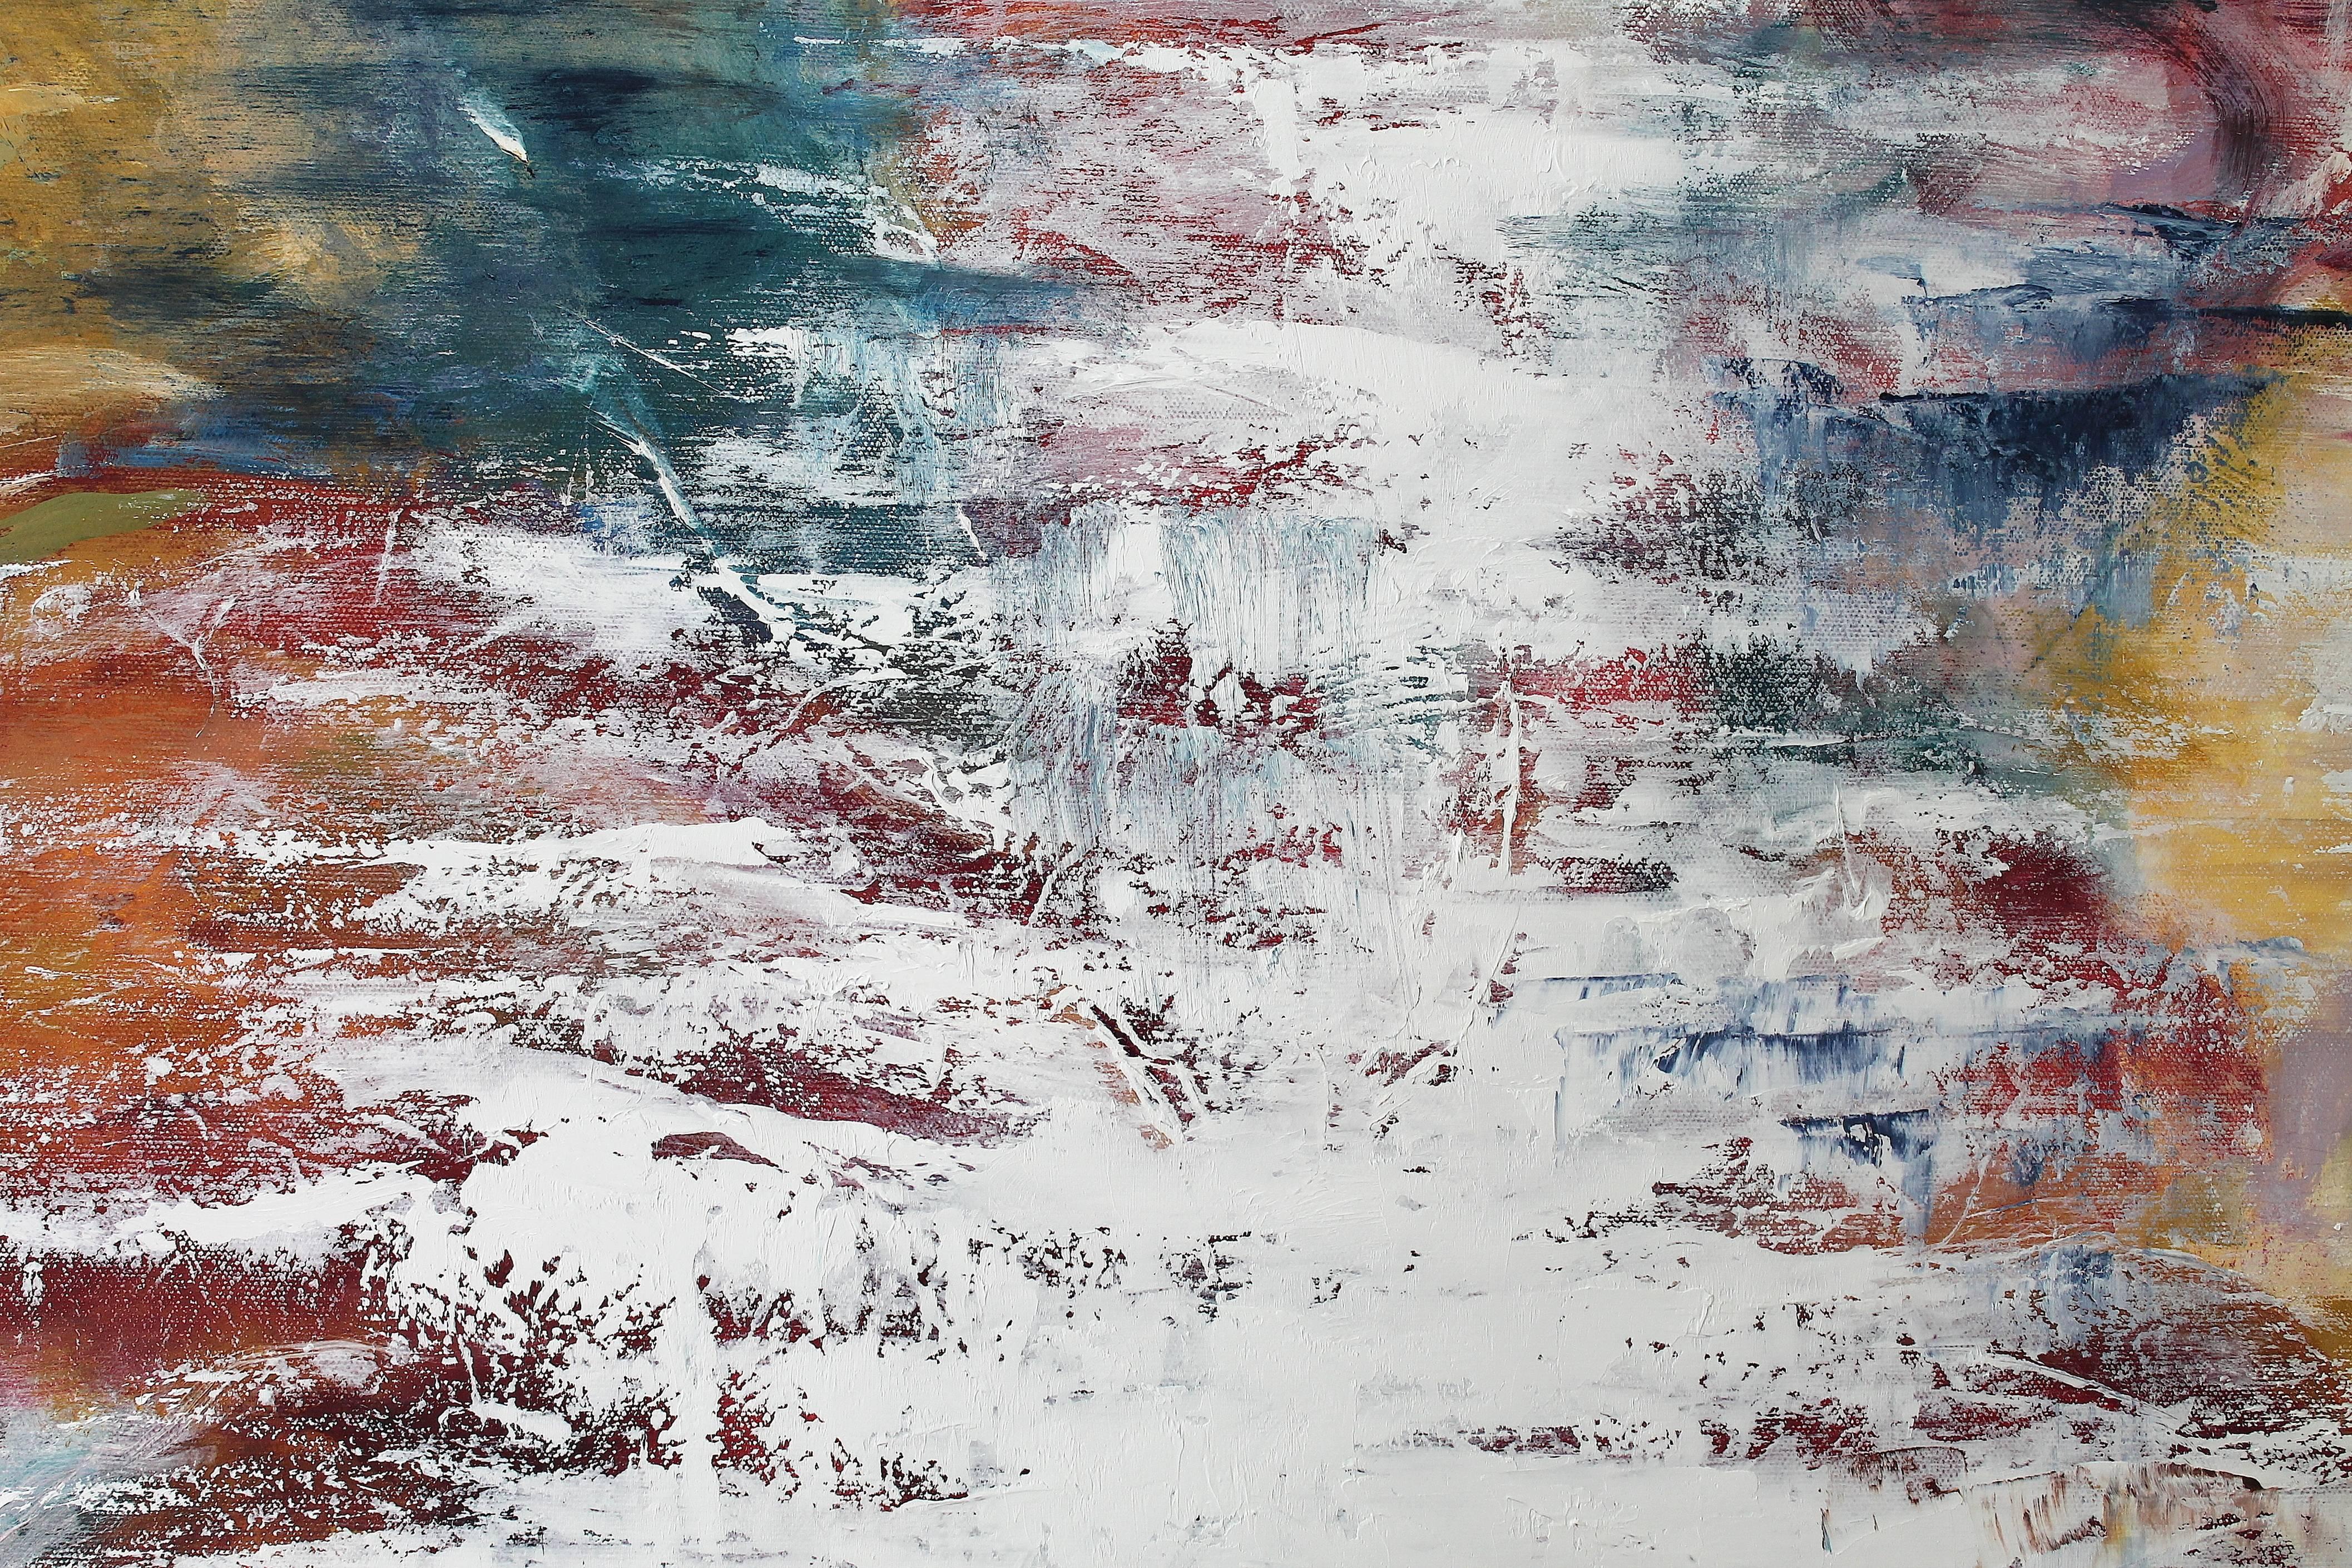 MIrrored Lake IX - Abstract Painting by Naoko Paluszak